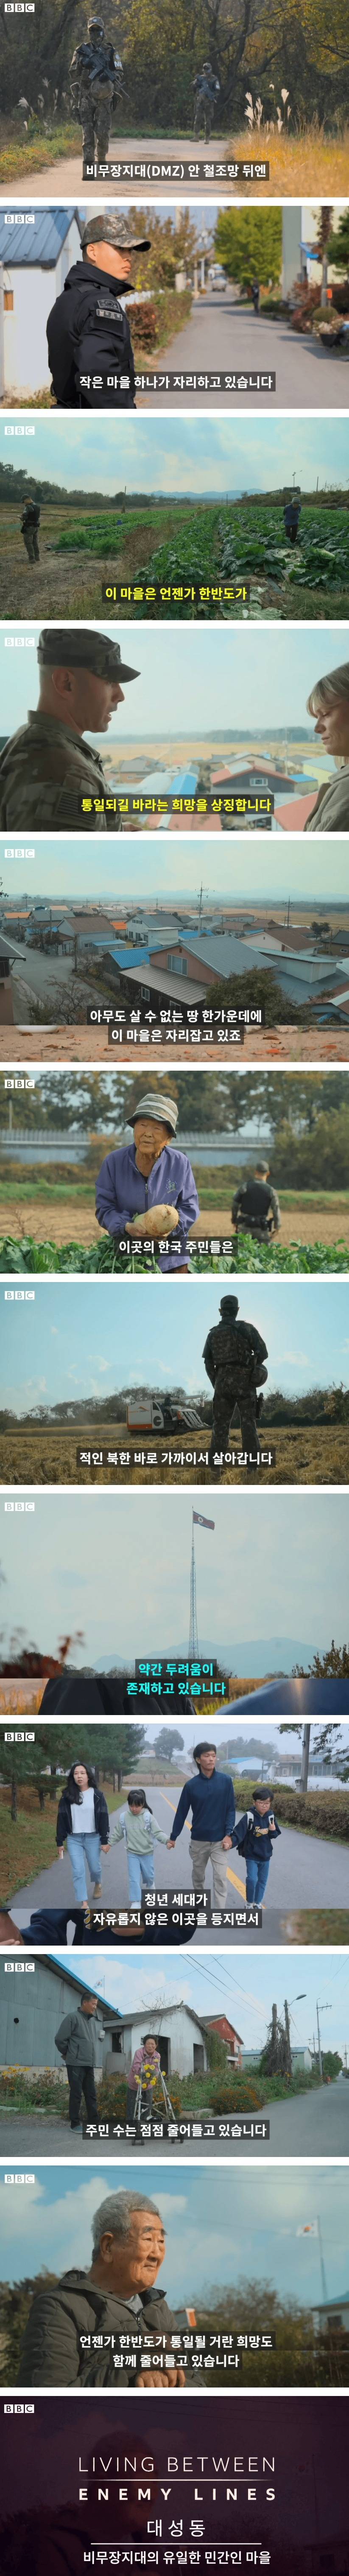 북한에서 가장 가까운 마을 - 2